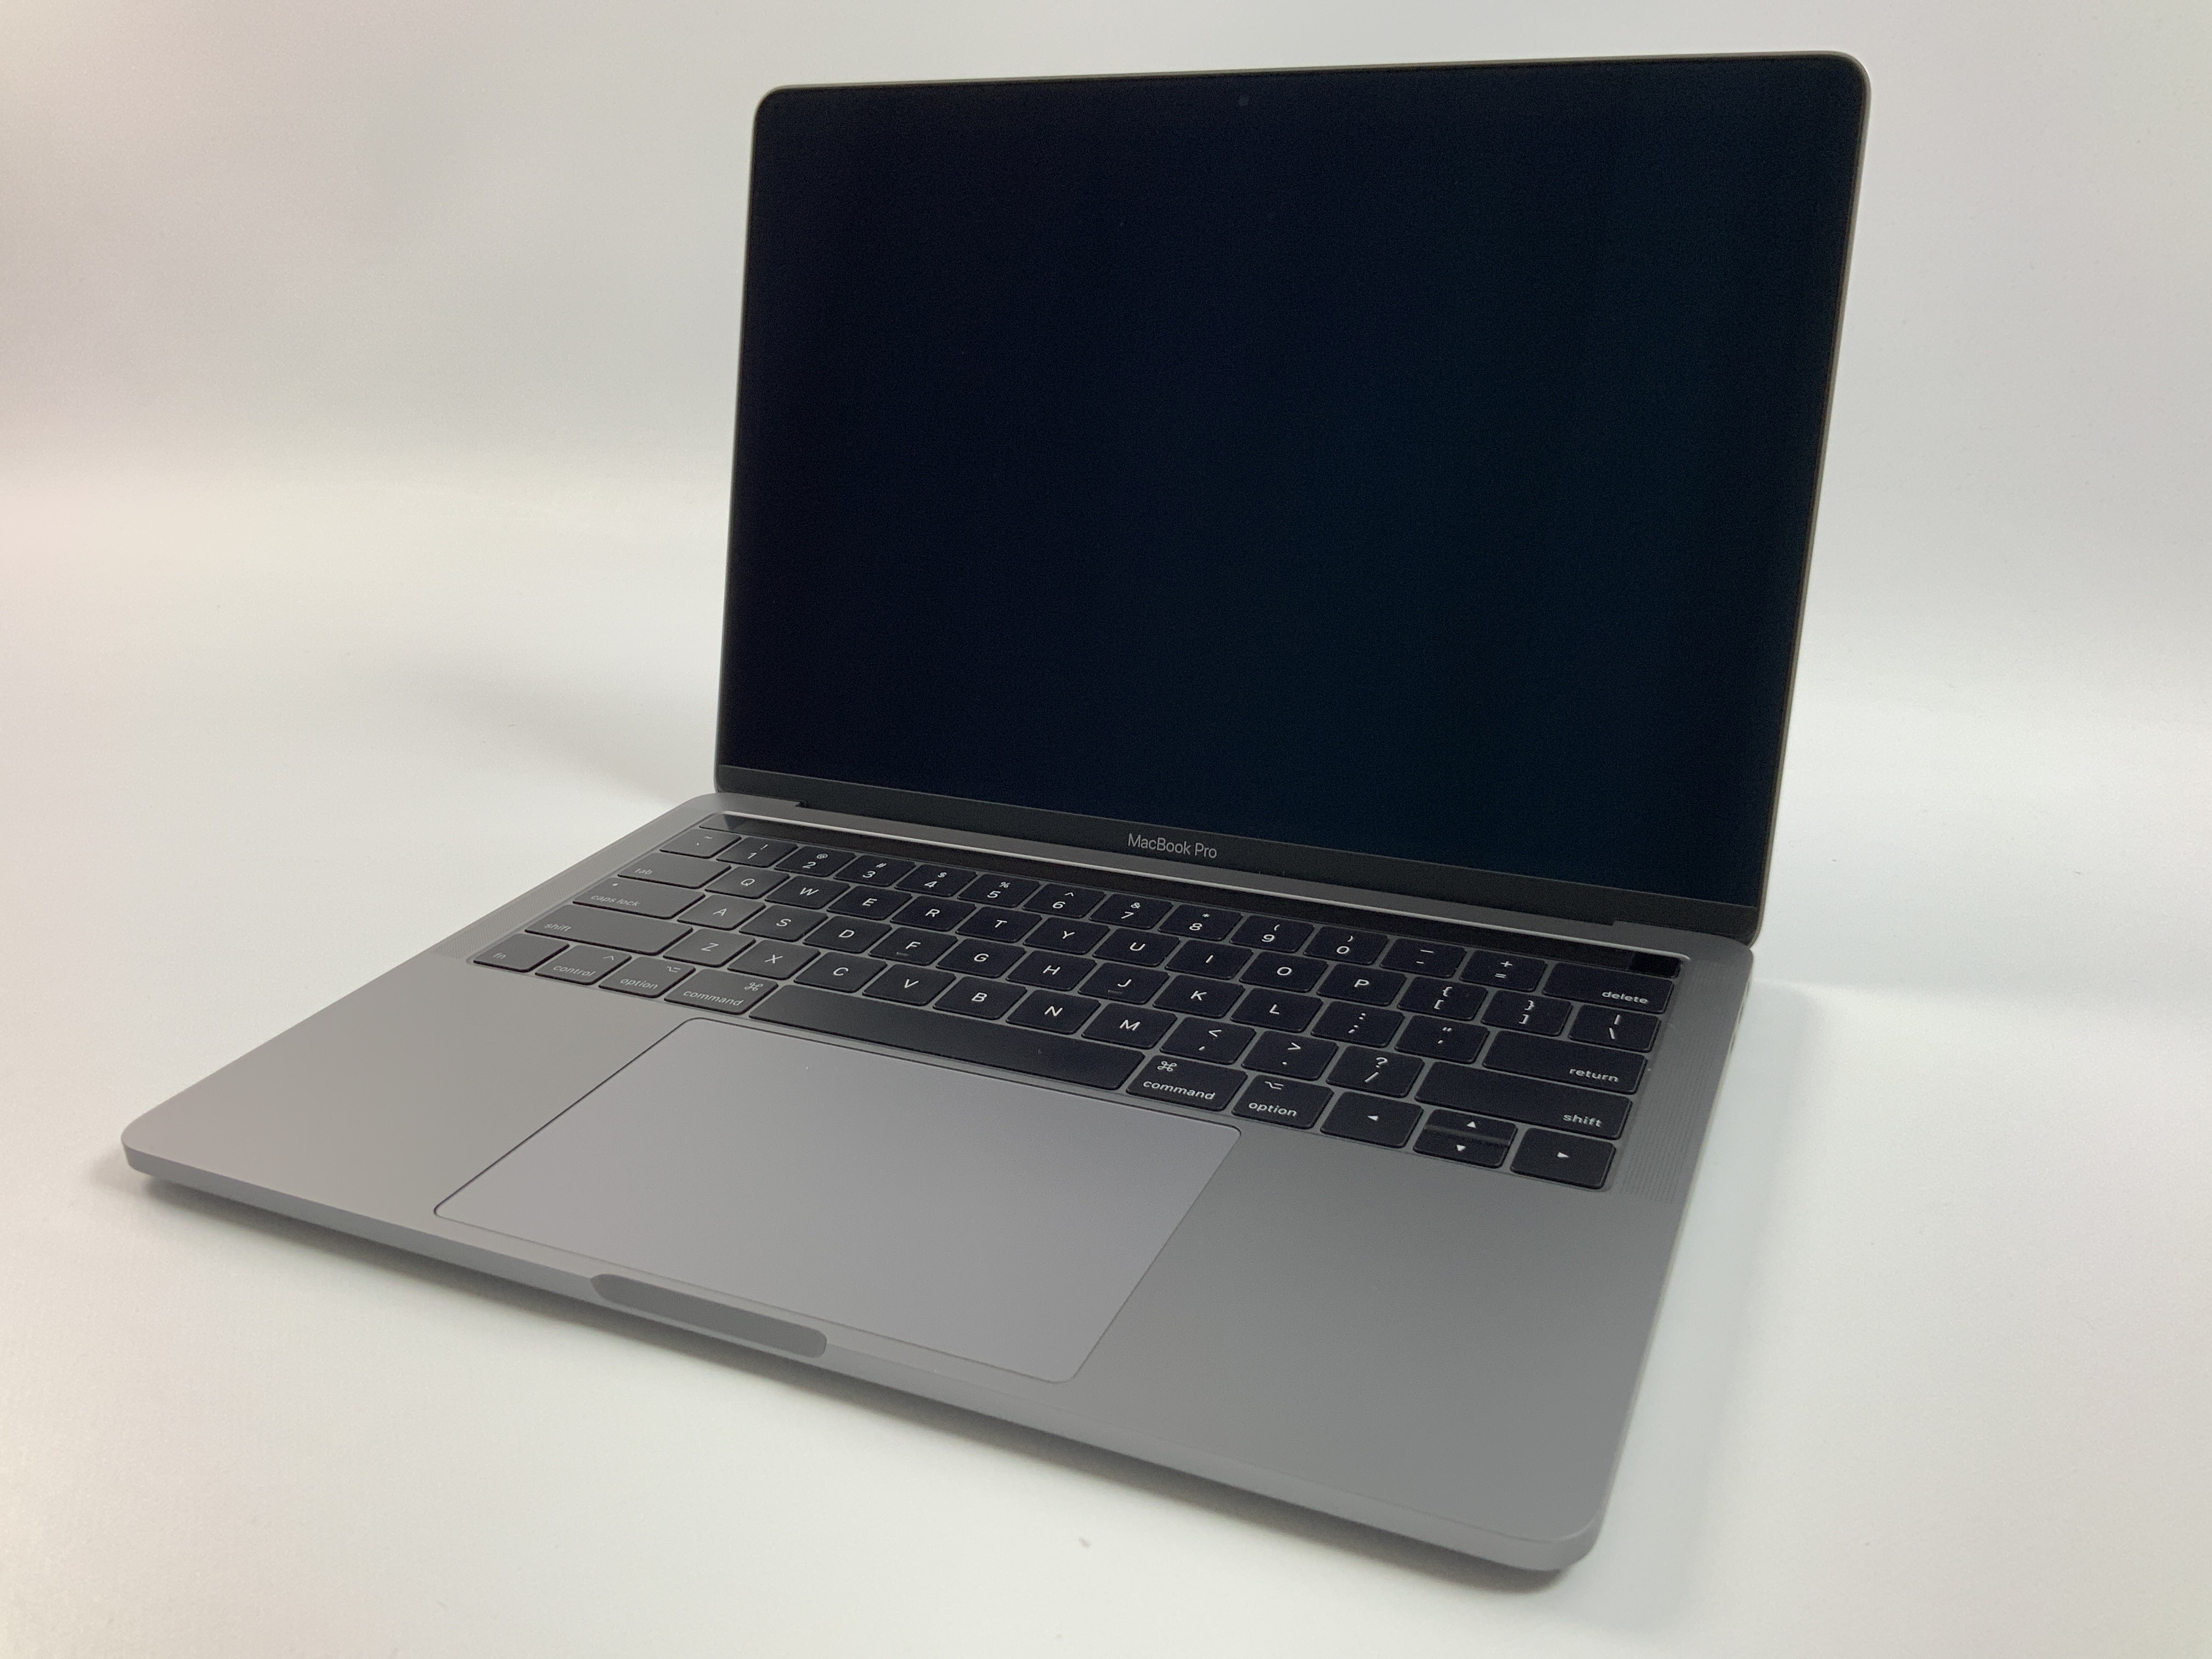 MacBook Pro 13" 4TBT Mid 2017 (Intel Core i5 3.1 GHz 8 GB RAM 512 GB SSD), Space Gray, Intel Core i5 3.1 GHz, 8 GB RAM, 512 GB SSD, Bild 1